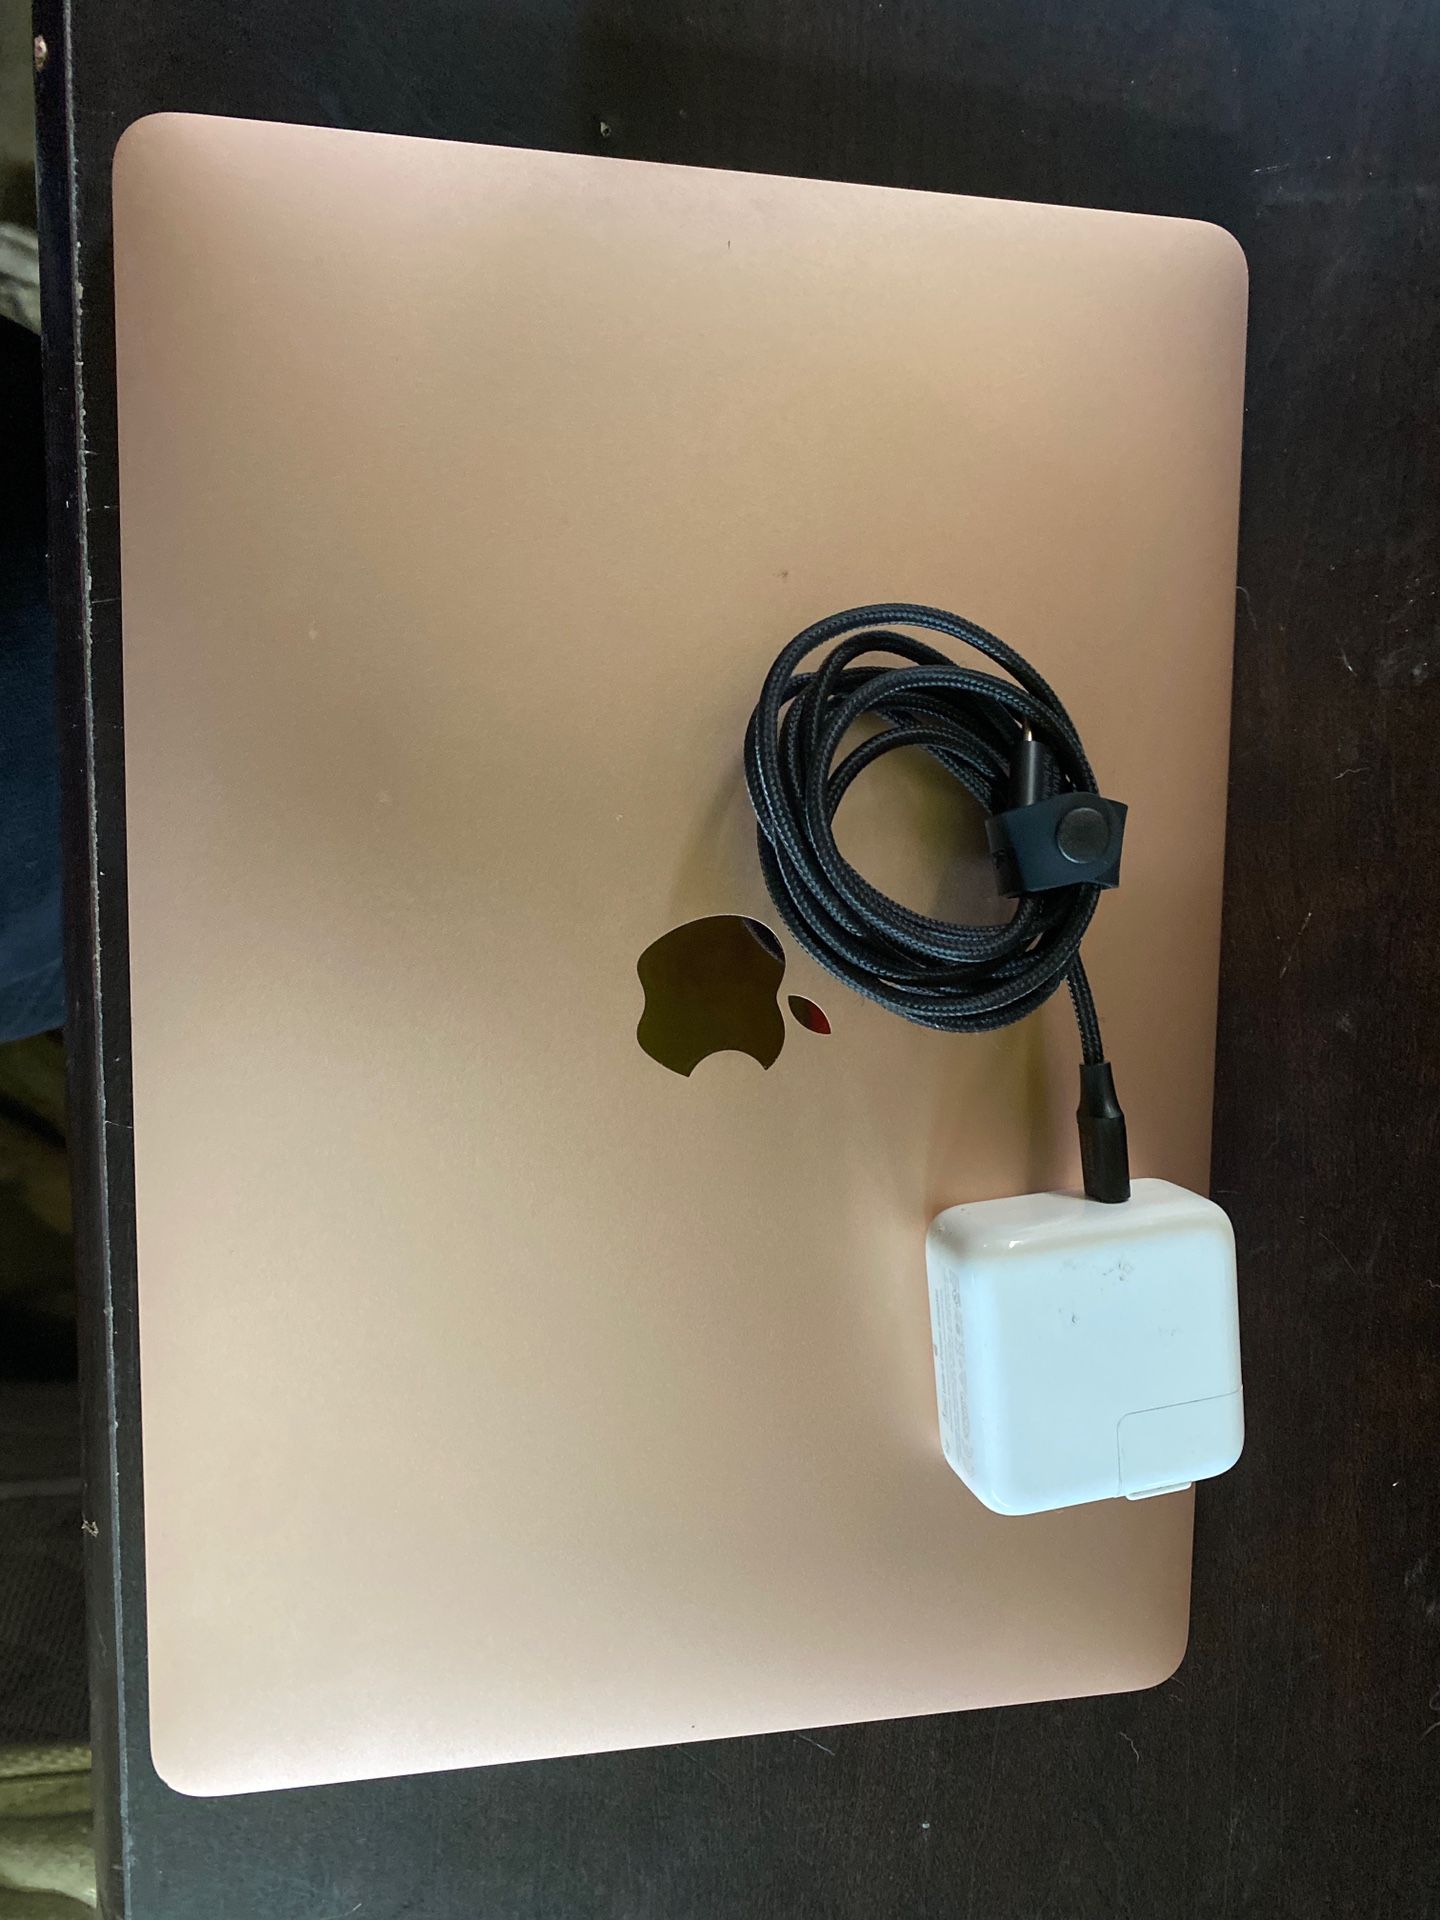 2019 MacBook Air